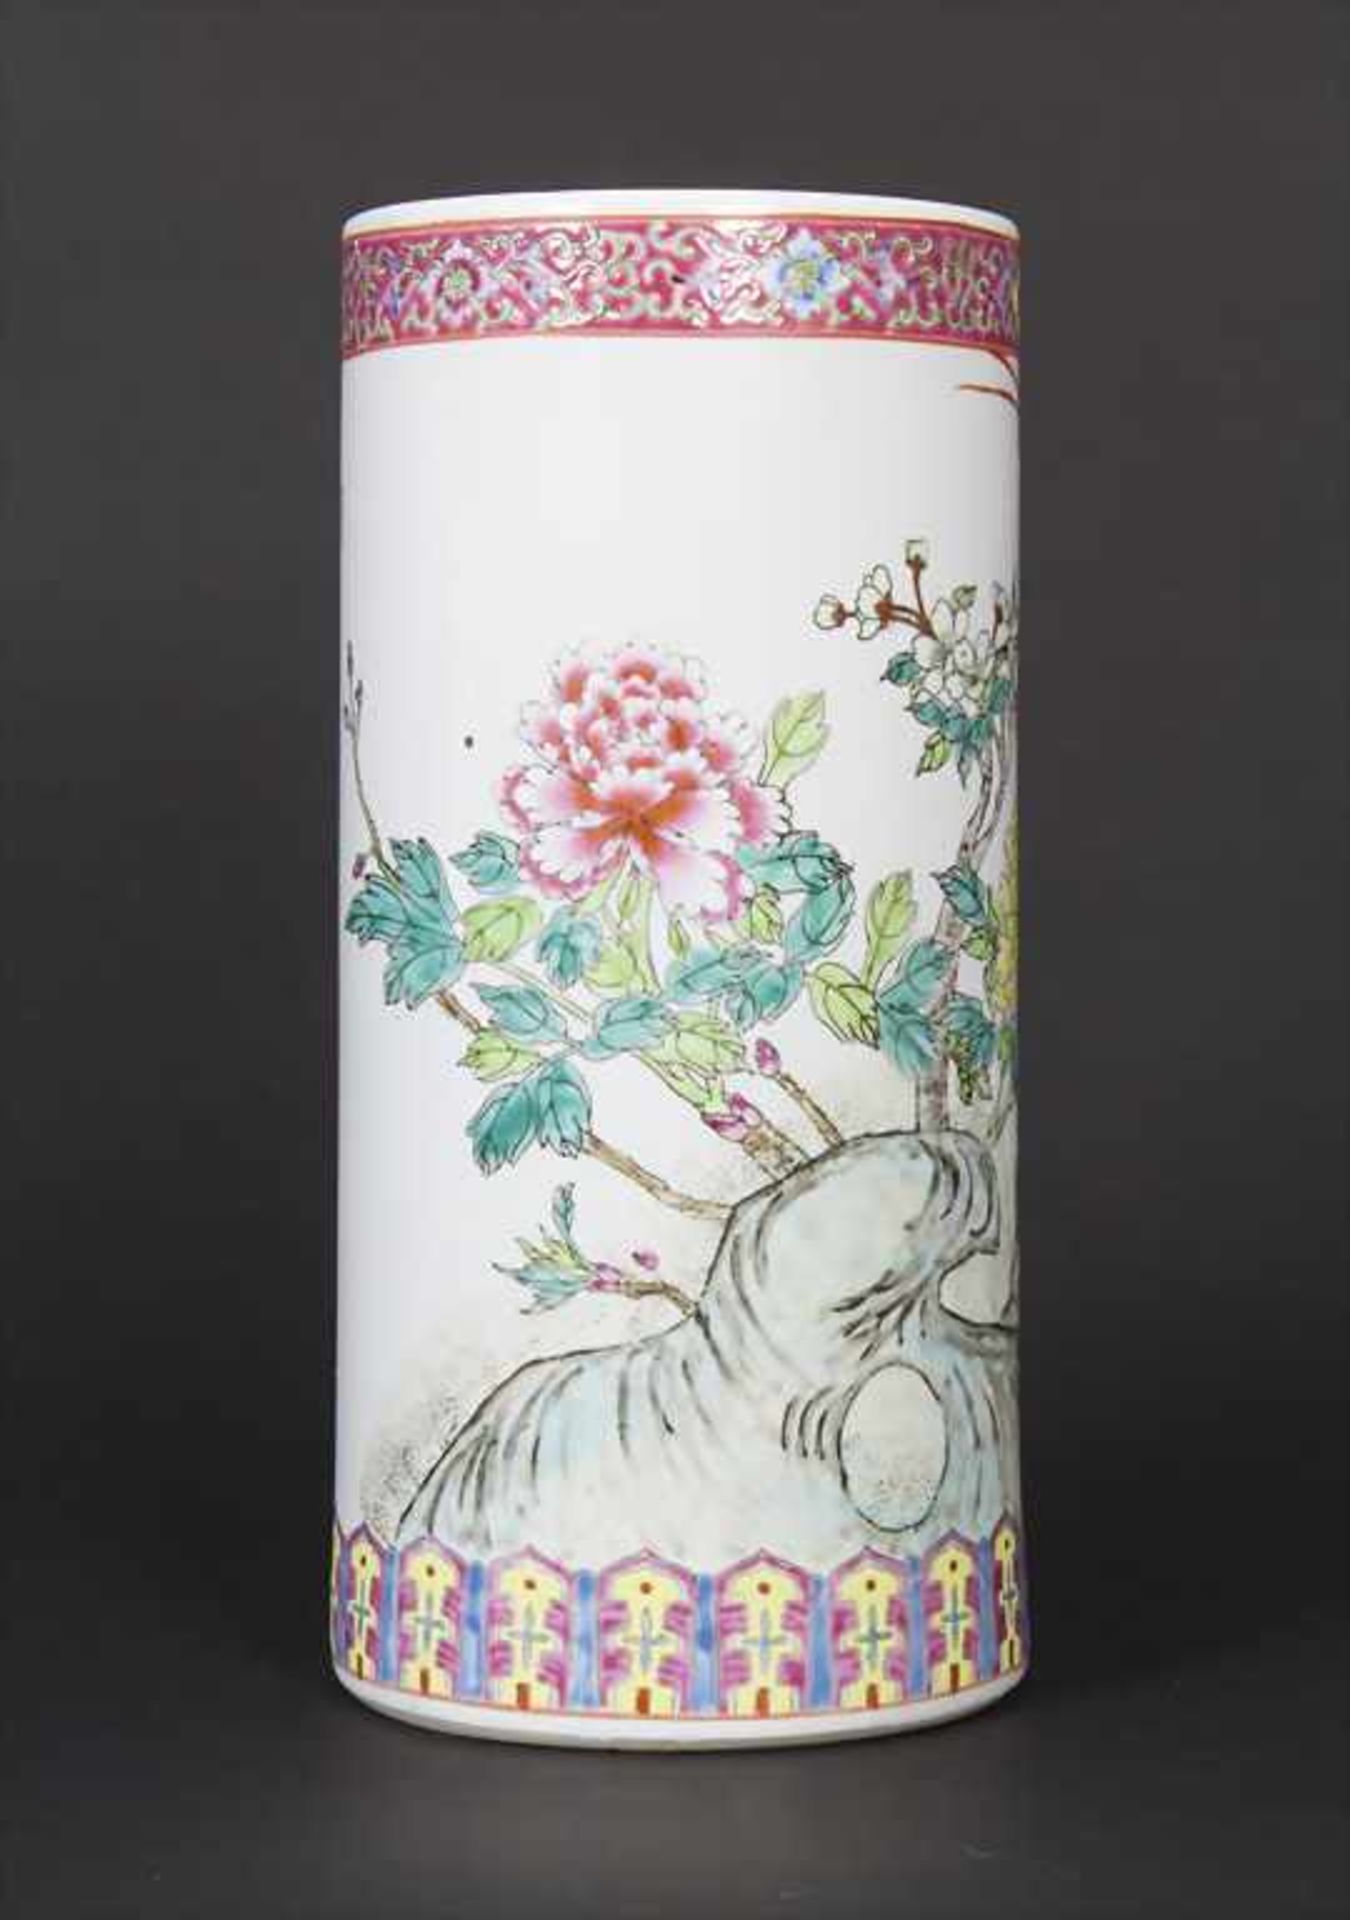 Porzellan-Vase / A Lidded Vase, China, 20. Jh.Material: Porzellan, mit polychromem Floraldekor, - Bild 2 aus 9